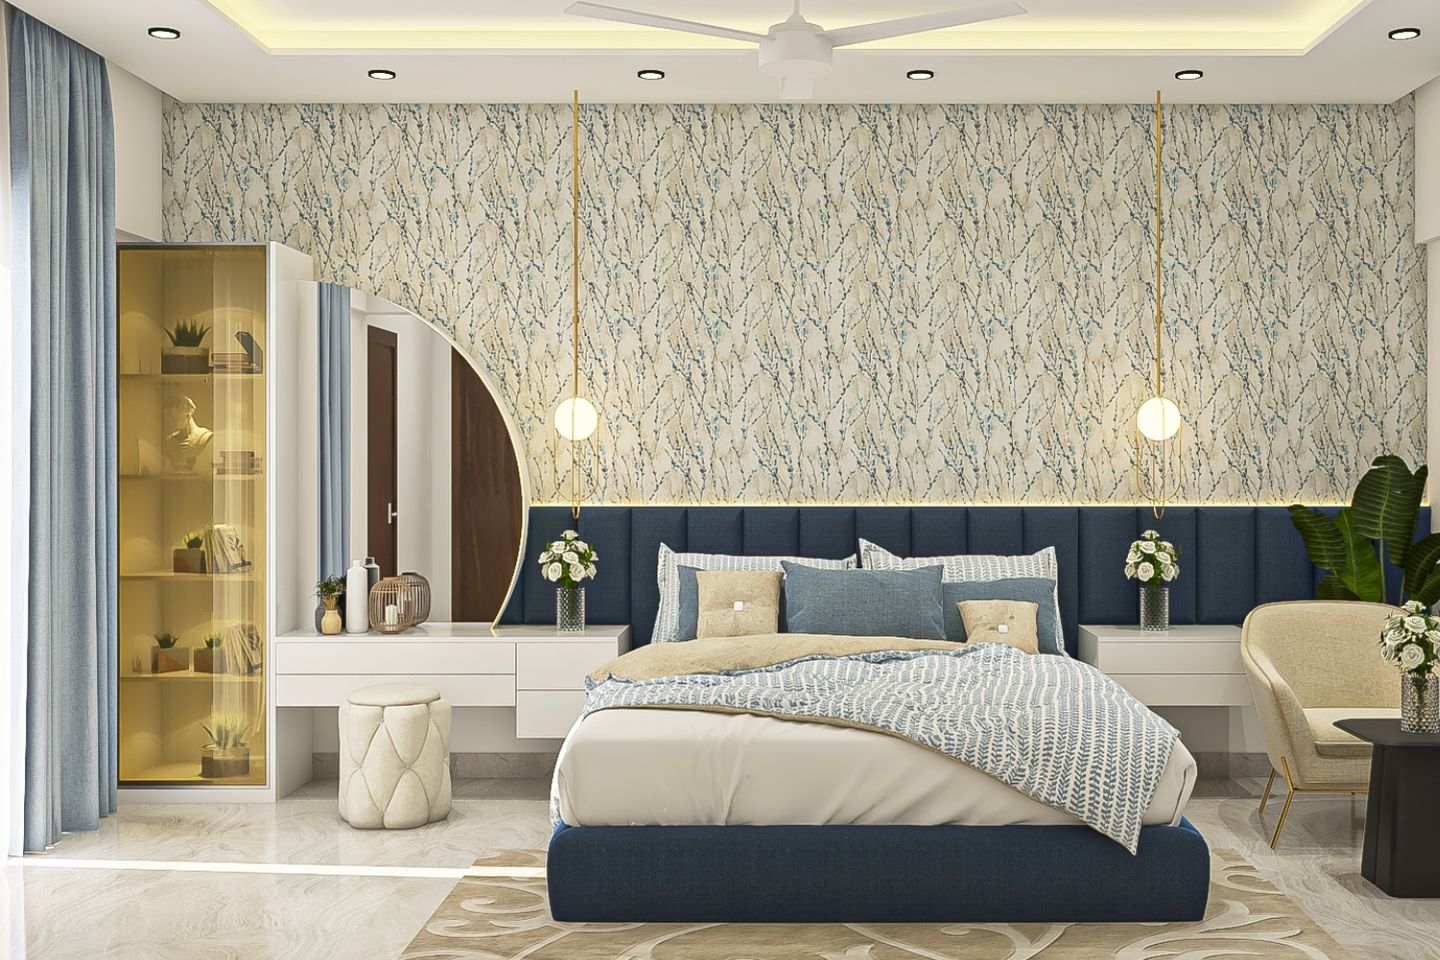 Master Bedroom Design With Beige Patterned Wallpaper - Livspace